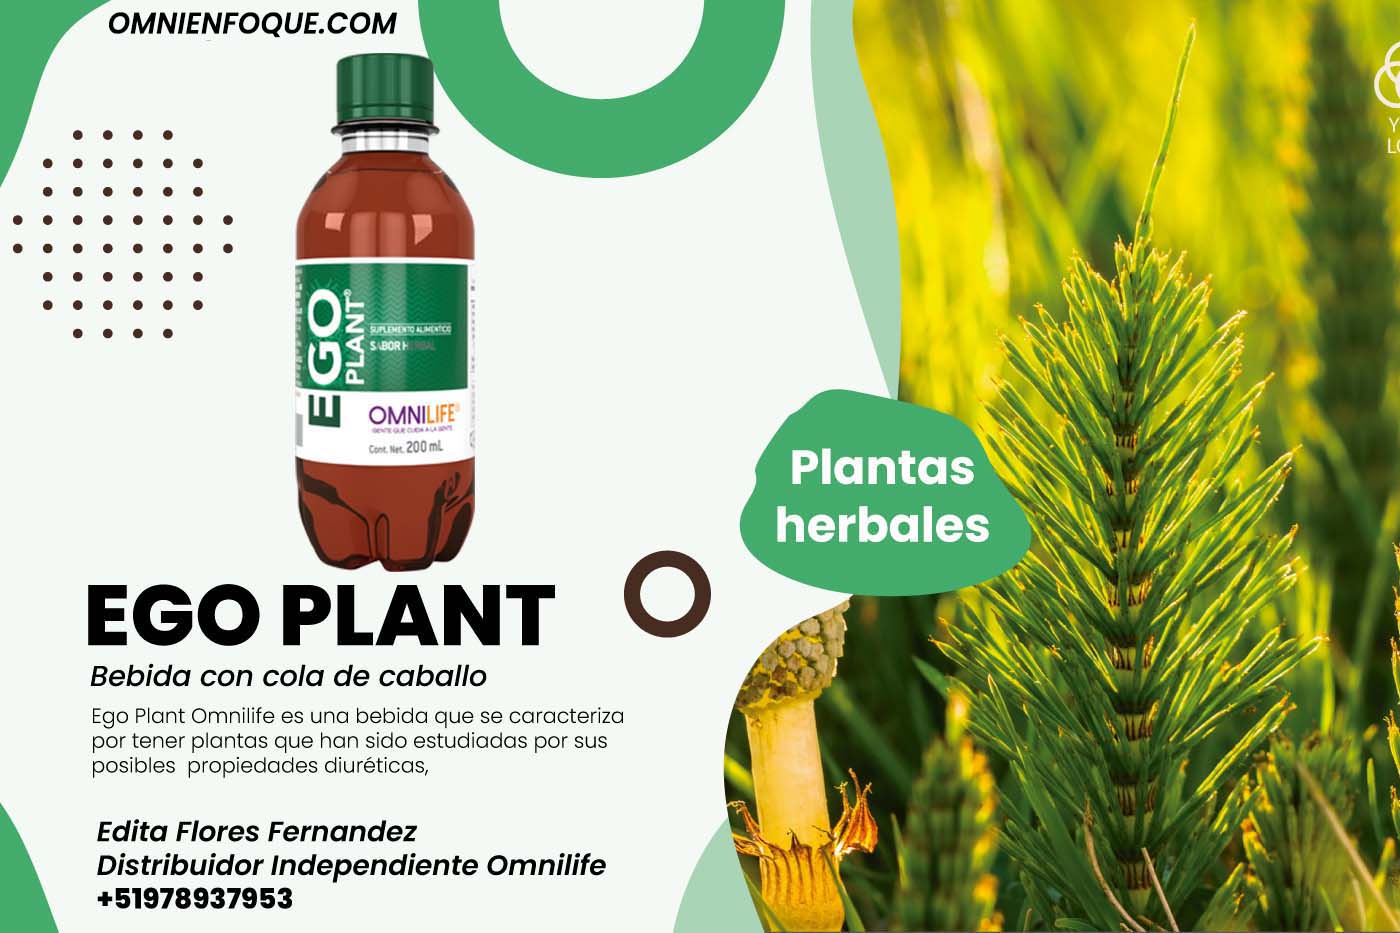 ego plant de omnilife es un producto hecho con plantas diureticas